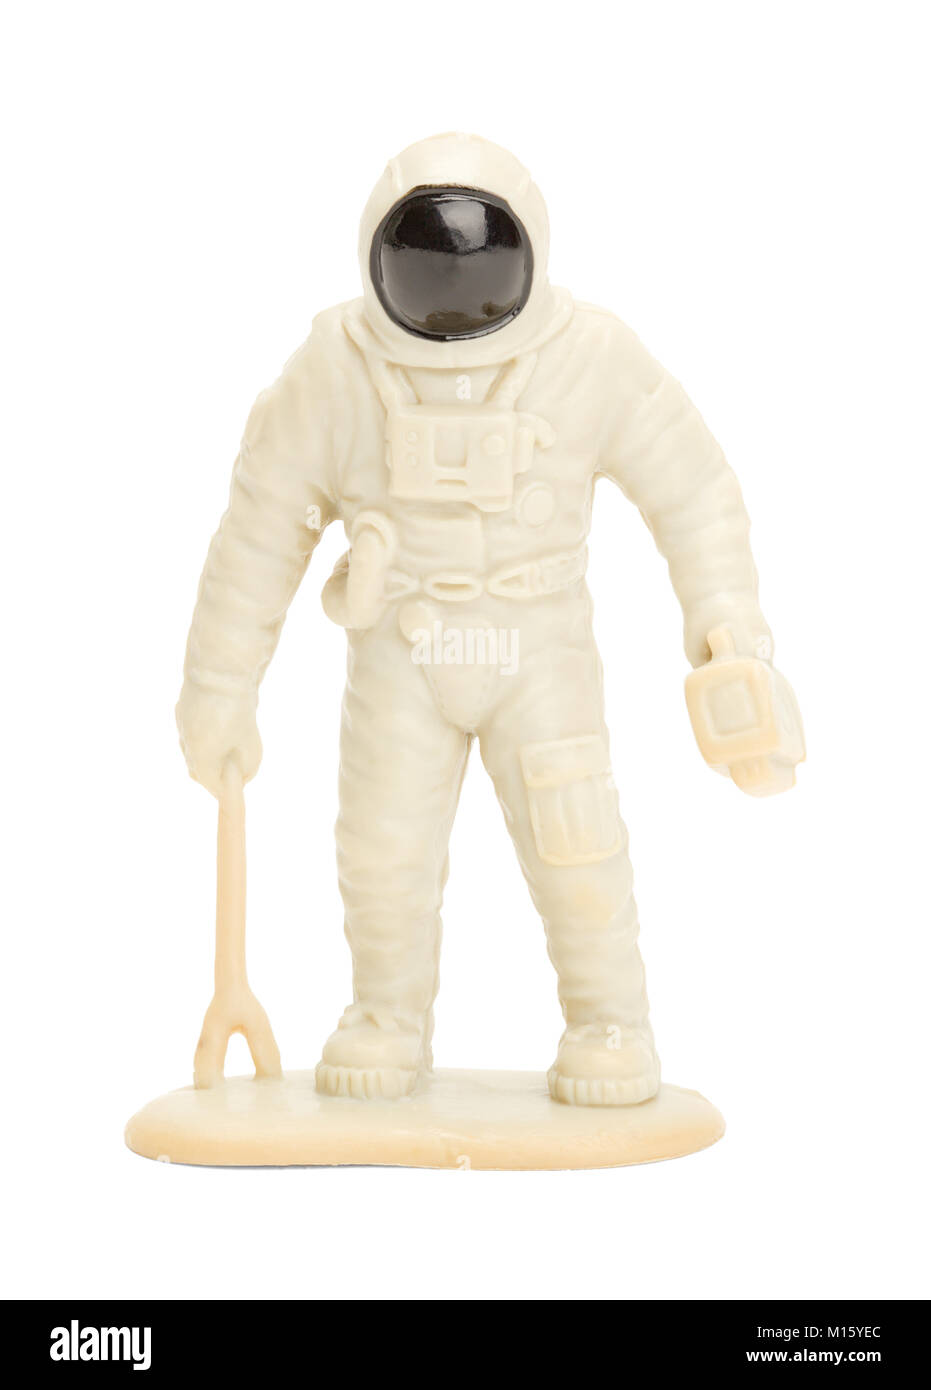 Giocattolo di plastica astronauta isolato su uno sfondo bianco. Foto Stock